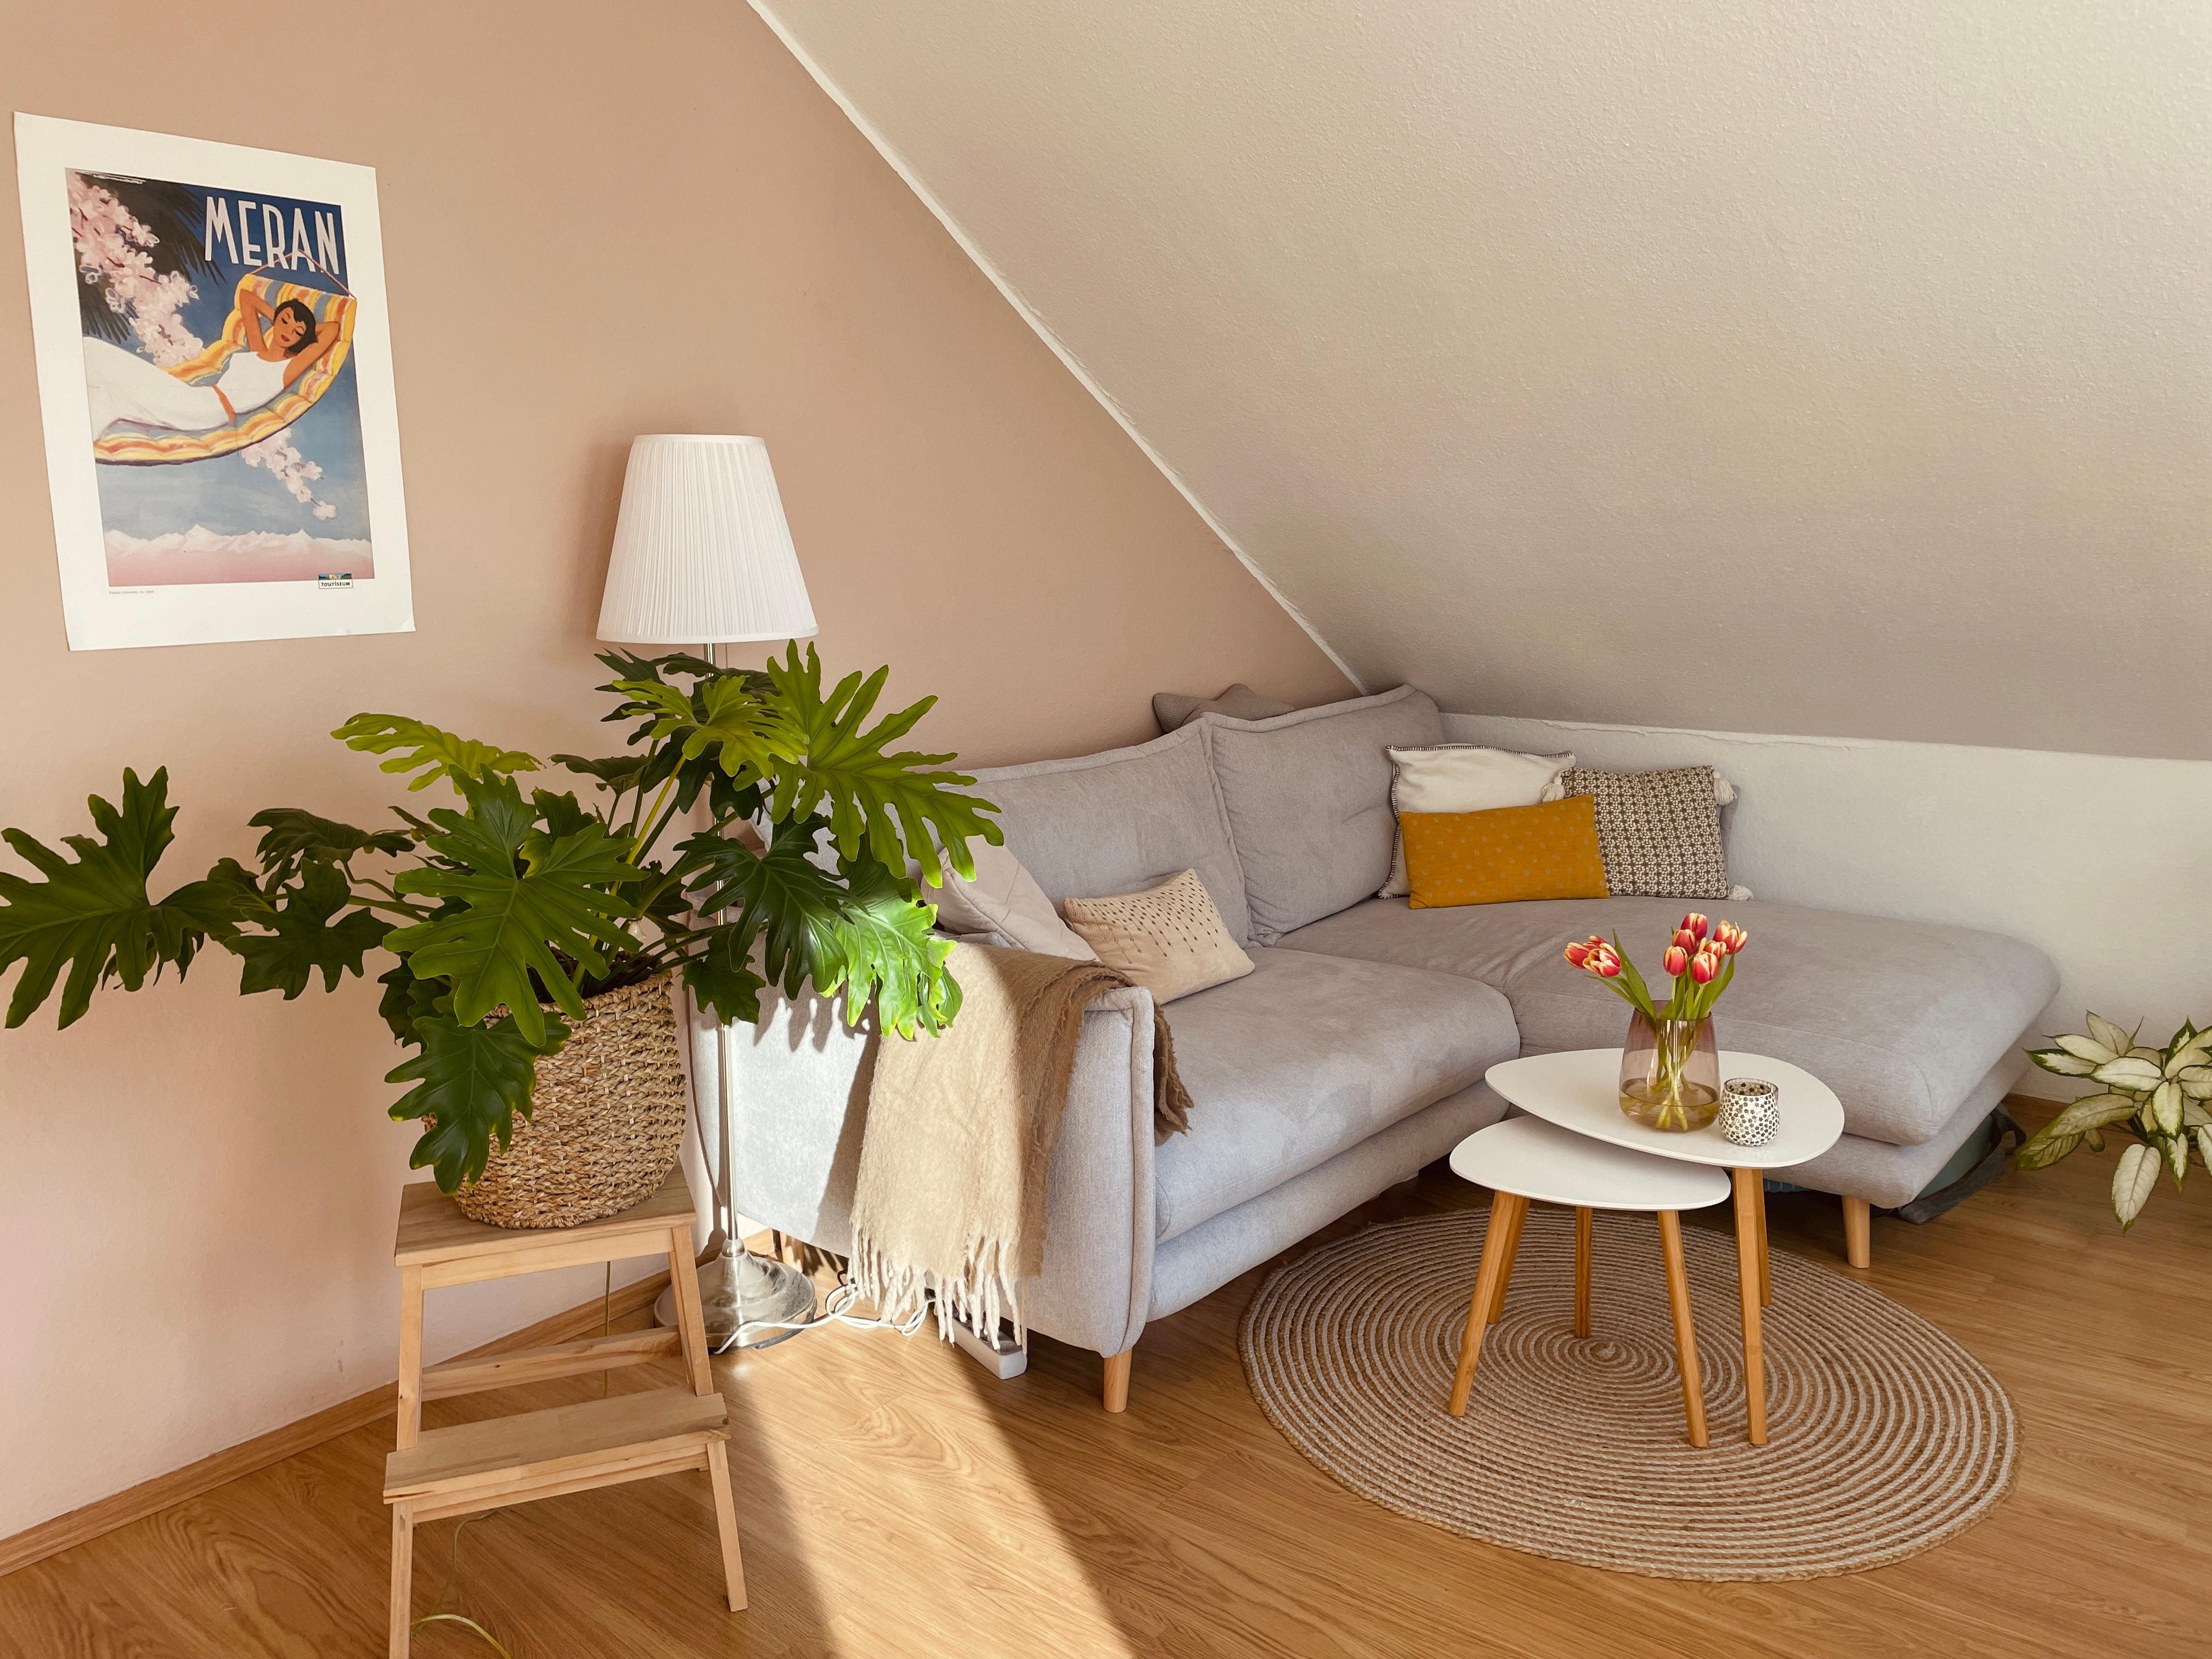 Sonnenliebe 🌞 #Wohnzimmer #Couch #Pflanzenliebe #Dachschräge